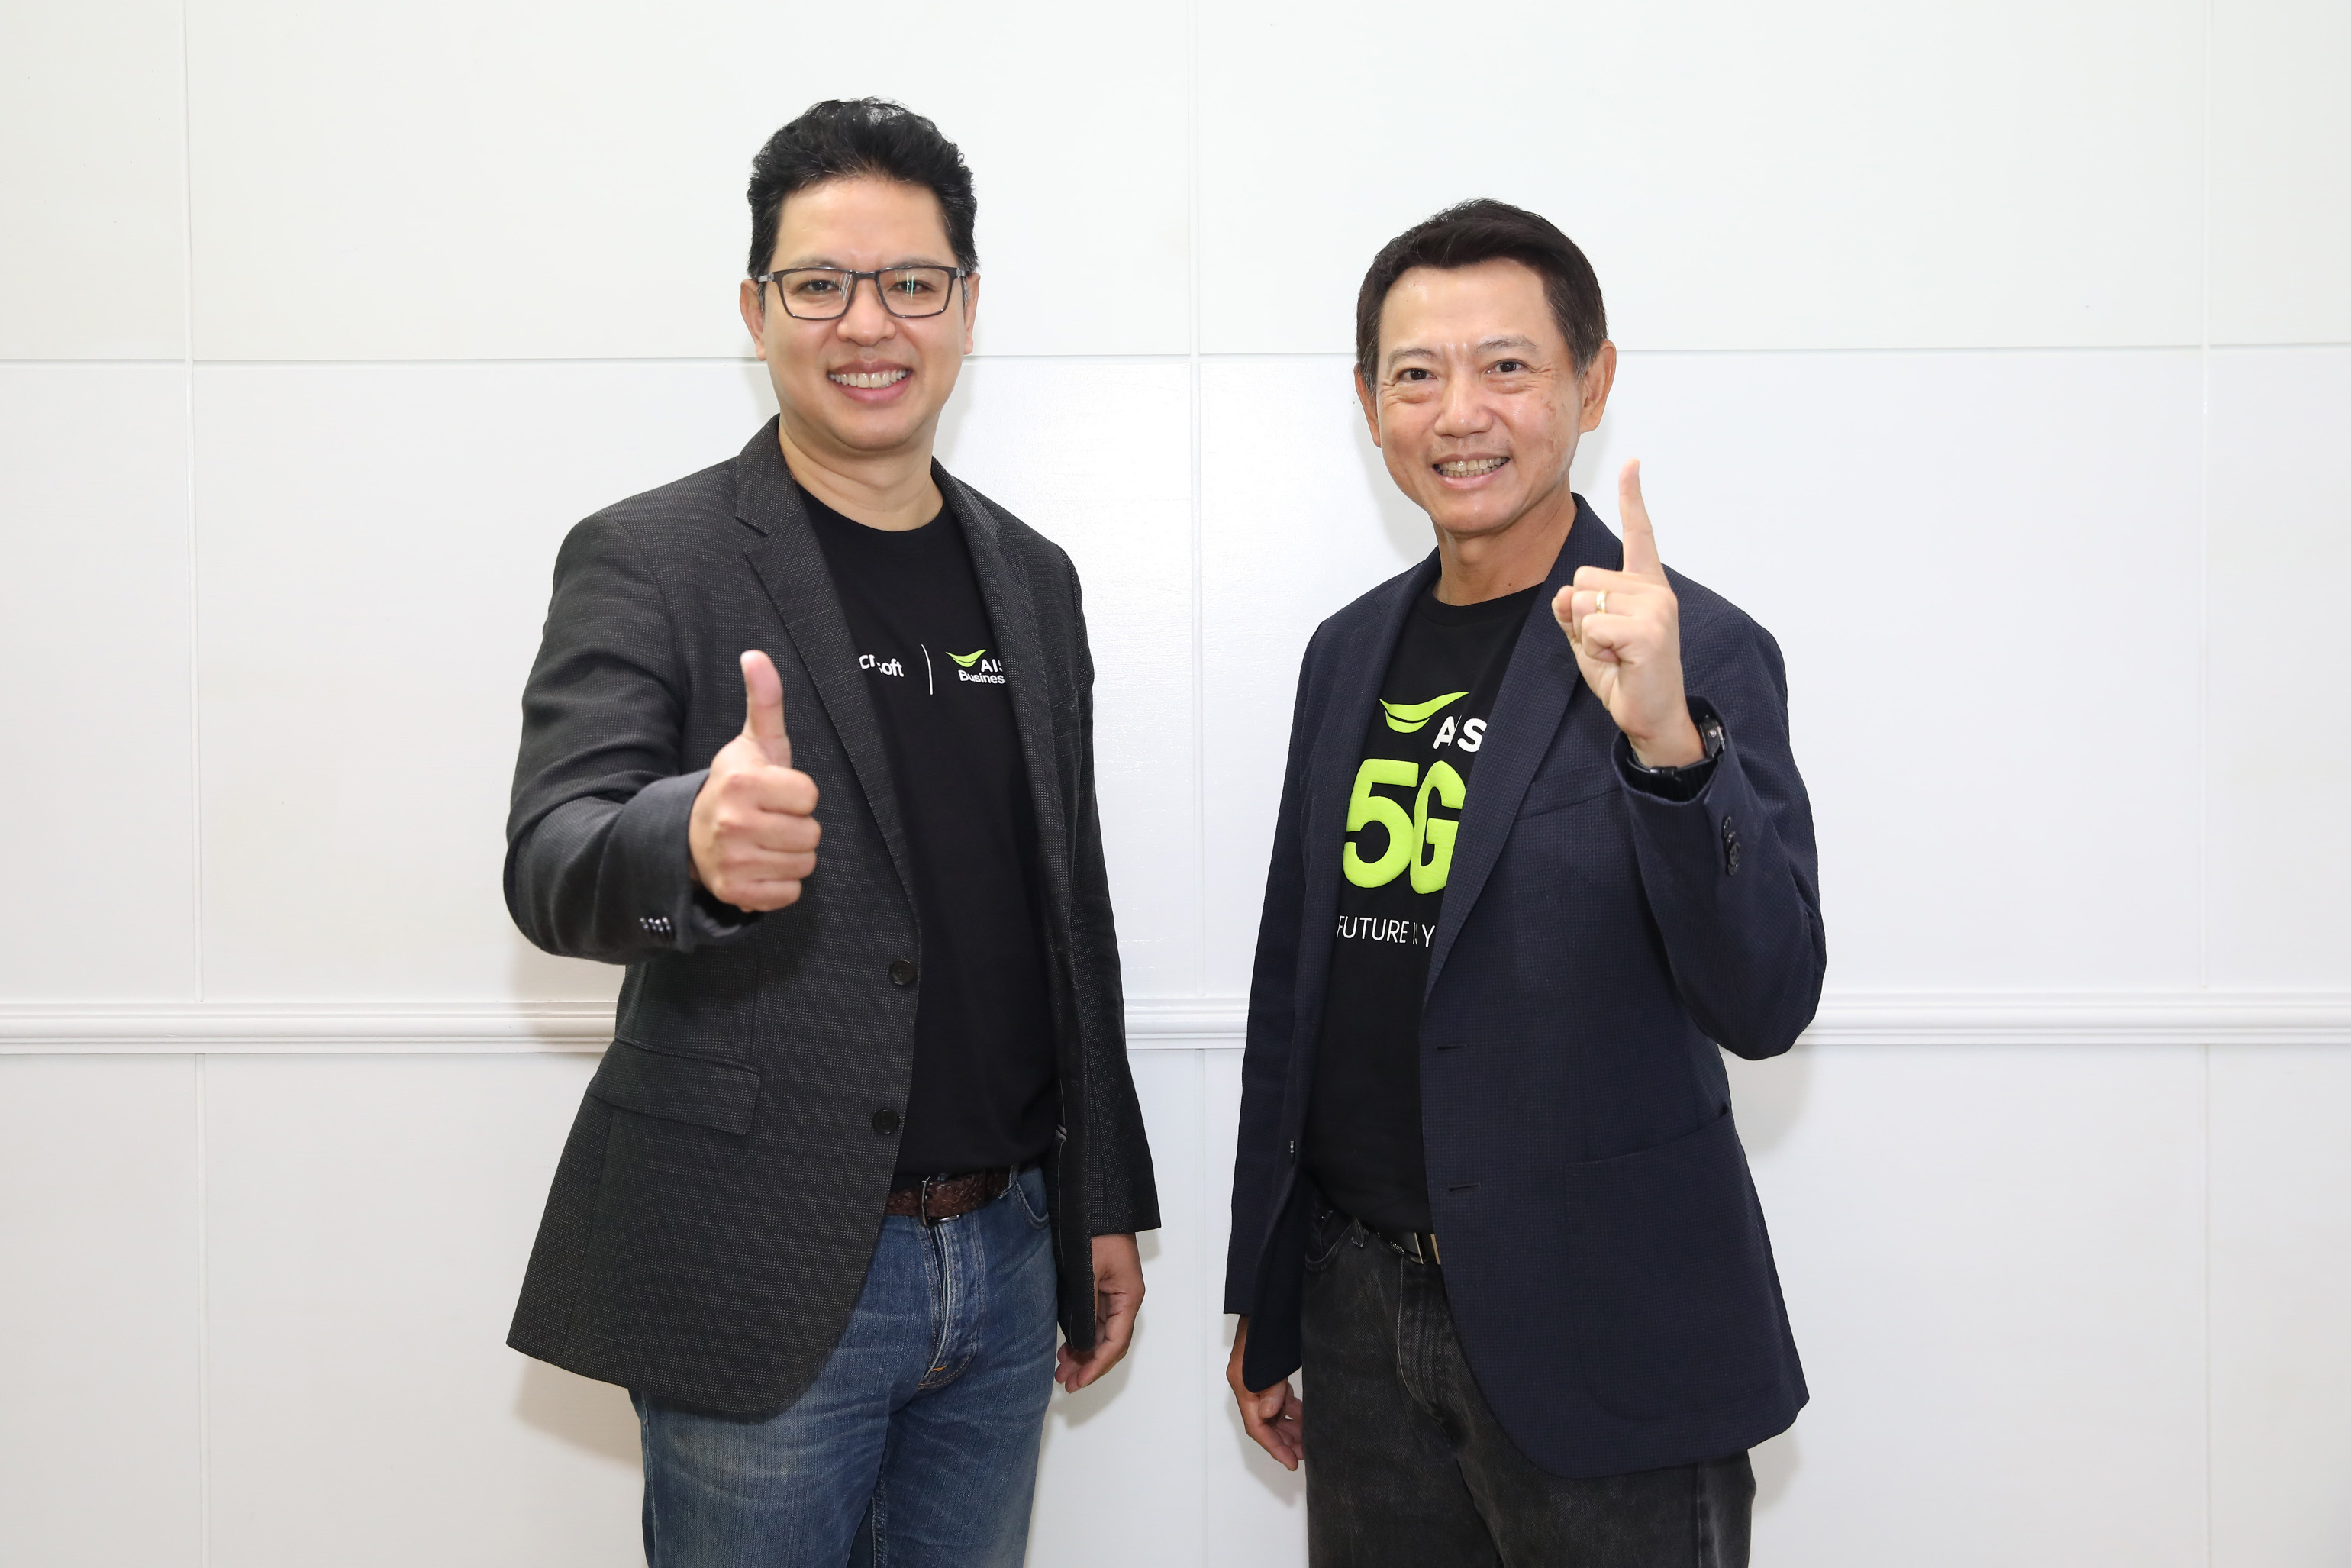 AIS Business หนุนธุรกิจไทยใช้ดิจิทัลทรานส์ฟอร์มองค์กรได้ง่ายๆ กับ “AIS Biz App Mart” สุดยอดมาร์เก็ตเพลสซอฟต์แวร์ รายแรกในไทย นำร่องด้วยโซลูชันดีที่สุดจากไมโครซอฟท์